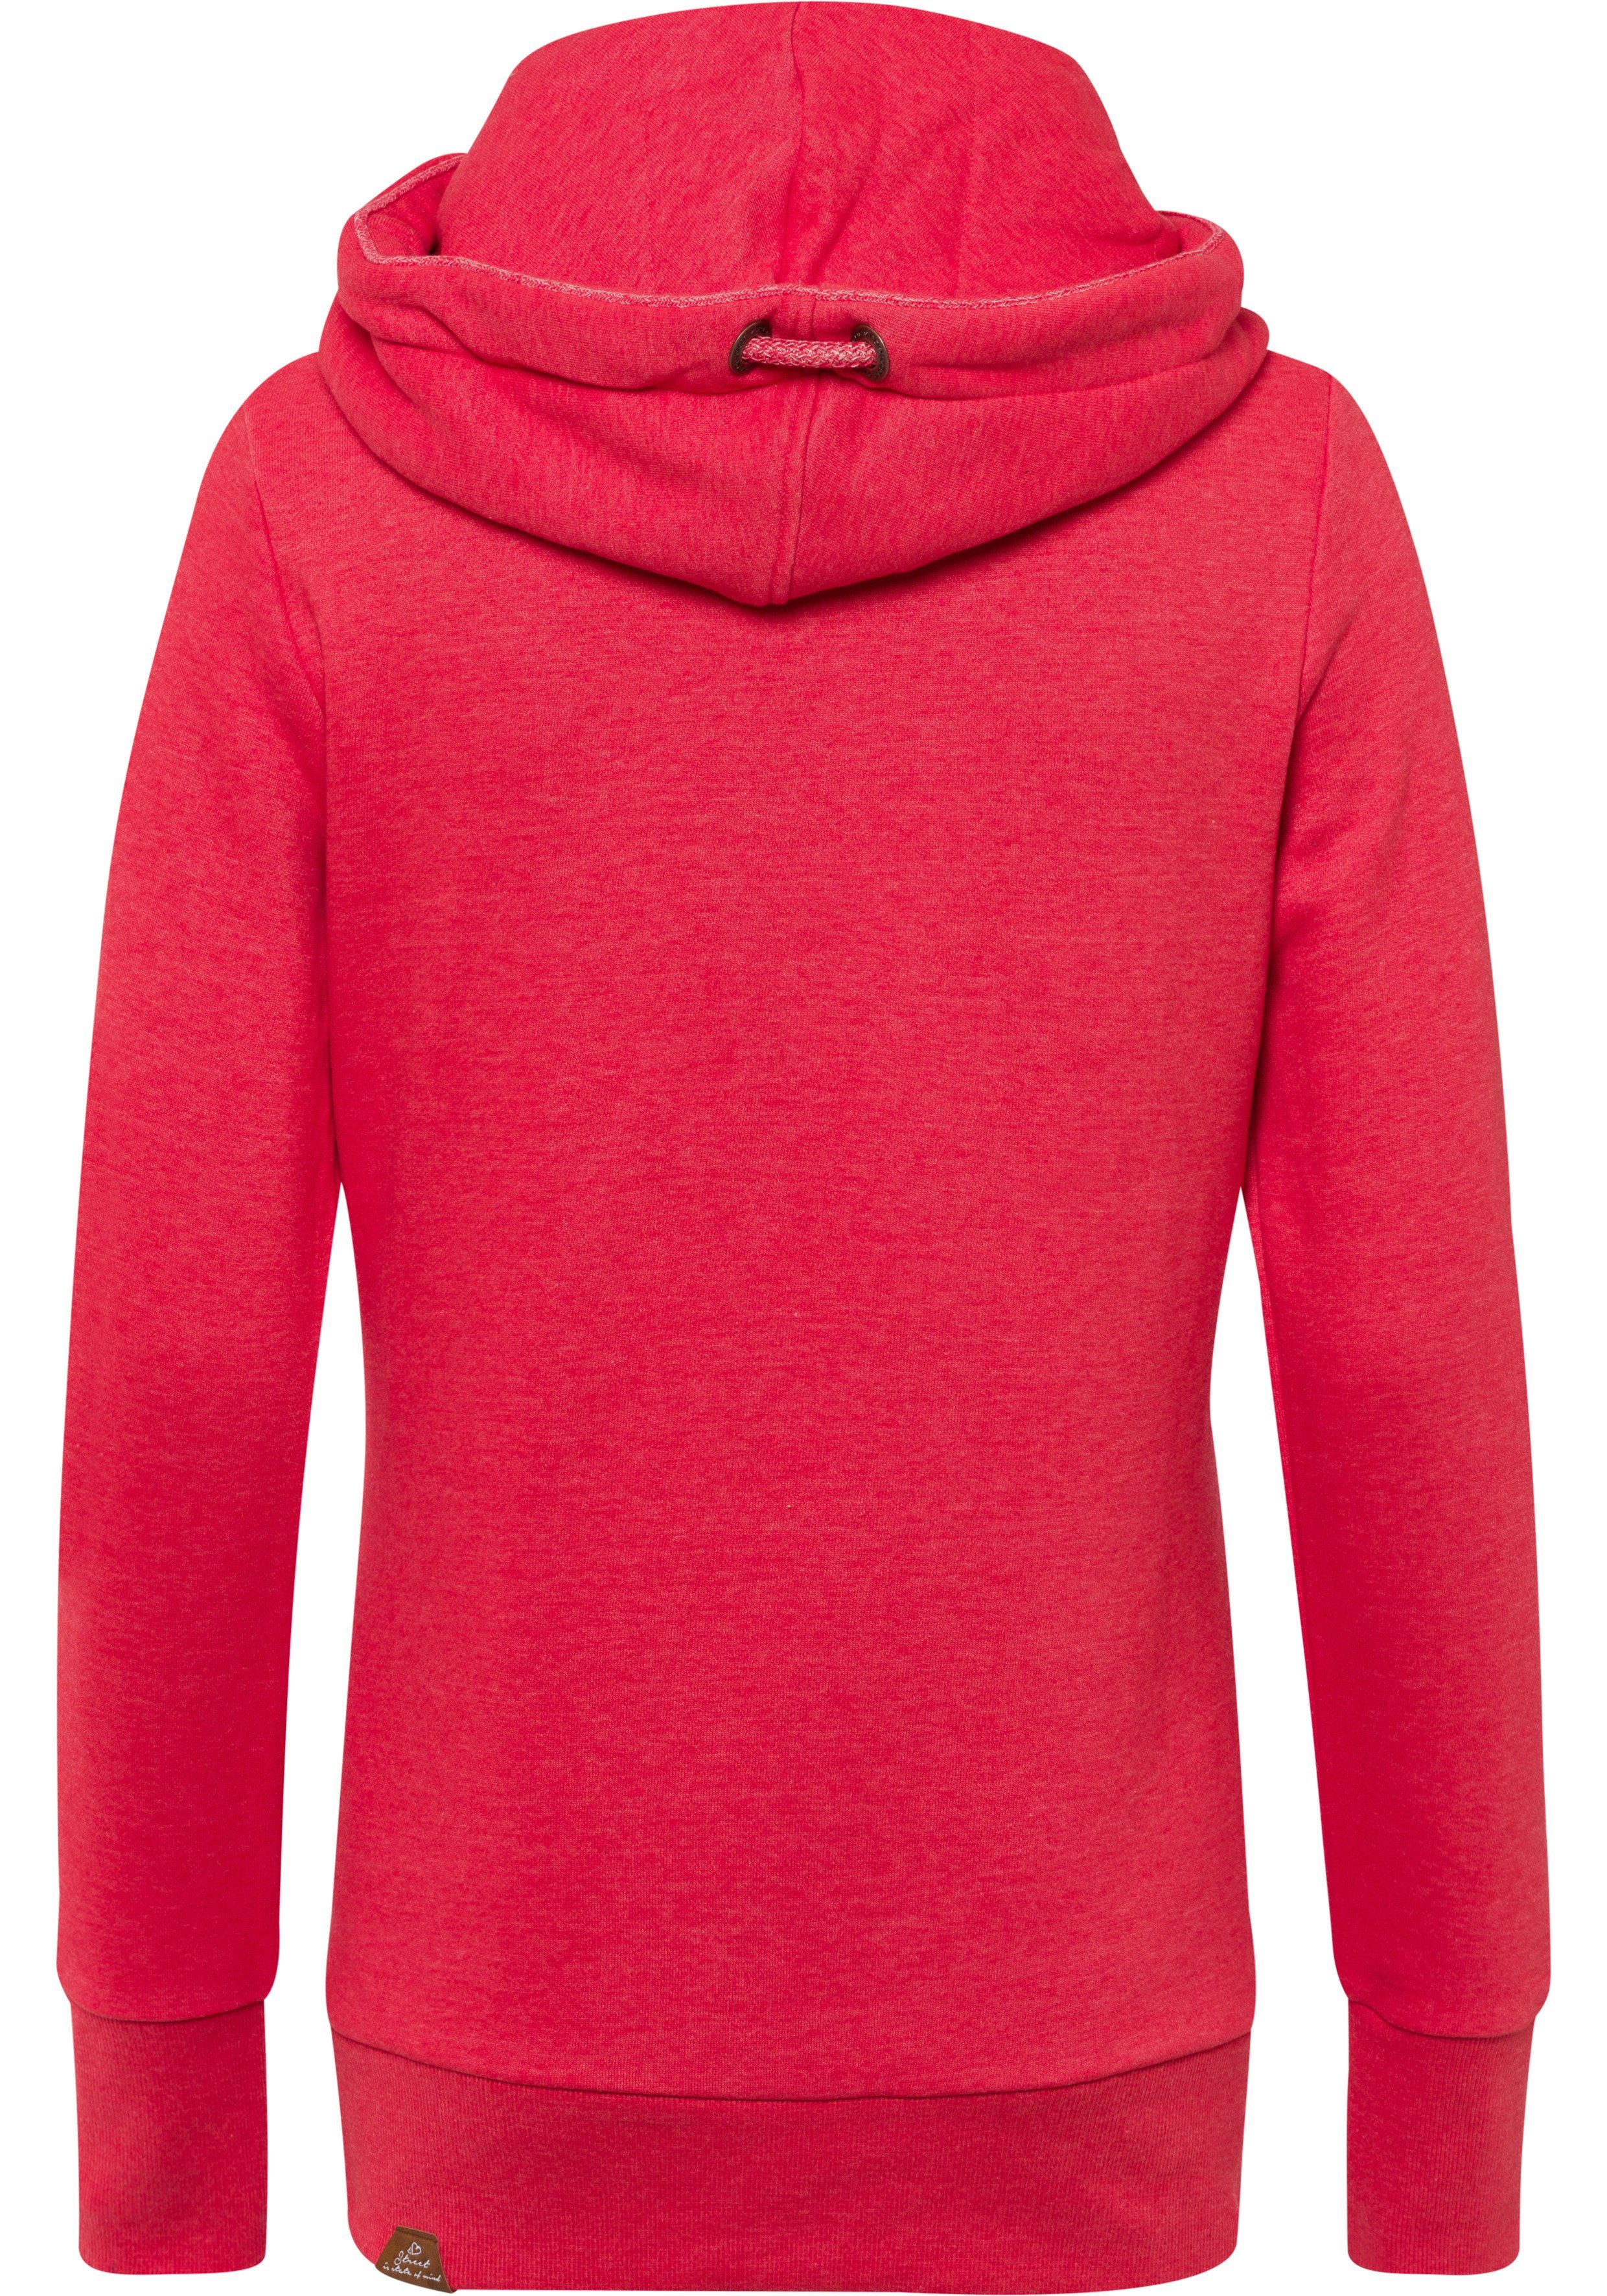 asymmetrischem RED Kapuzensweatshirt mit GRIPY BOLD Schalkragen Ragwear